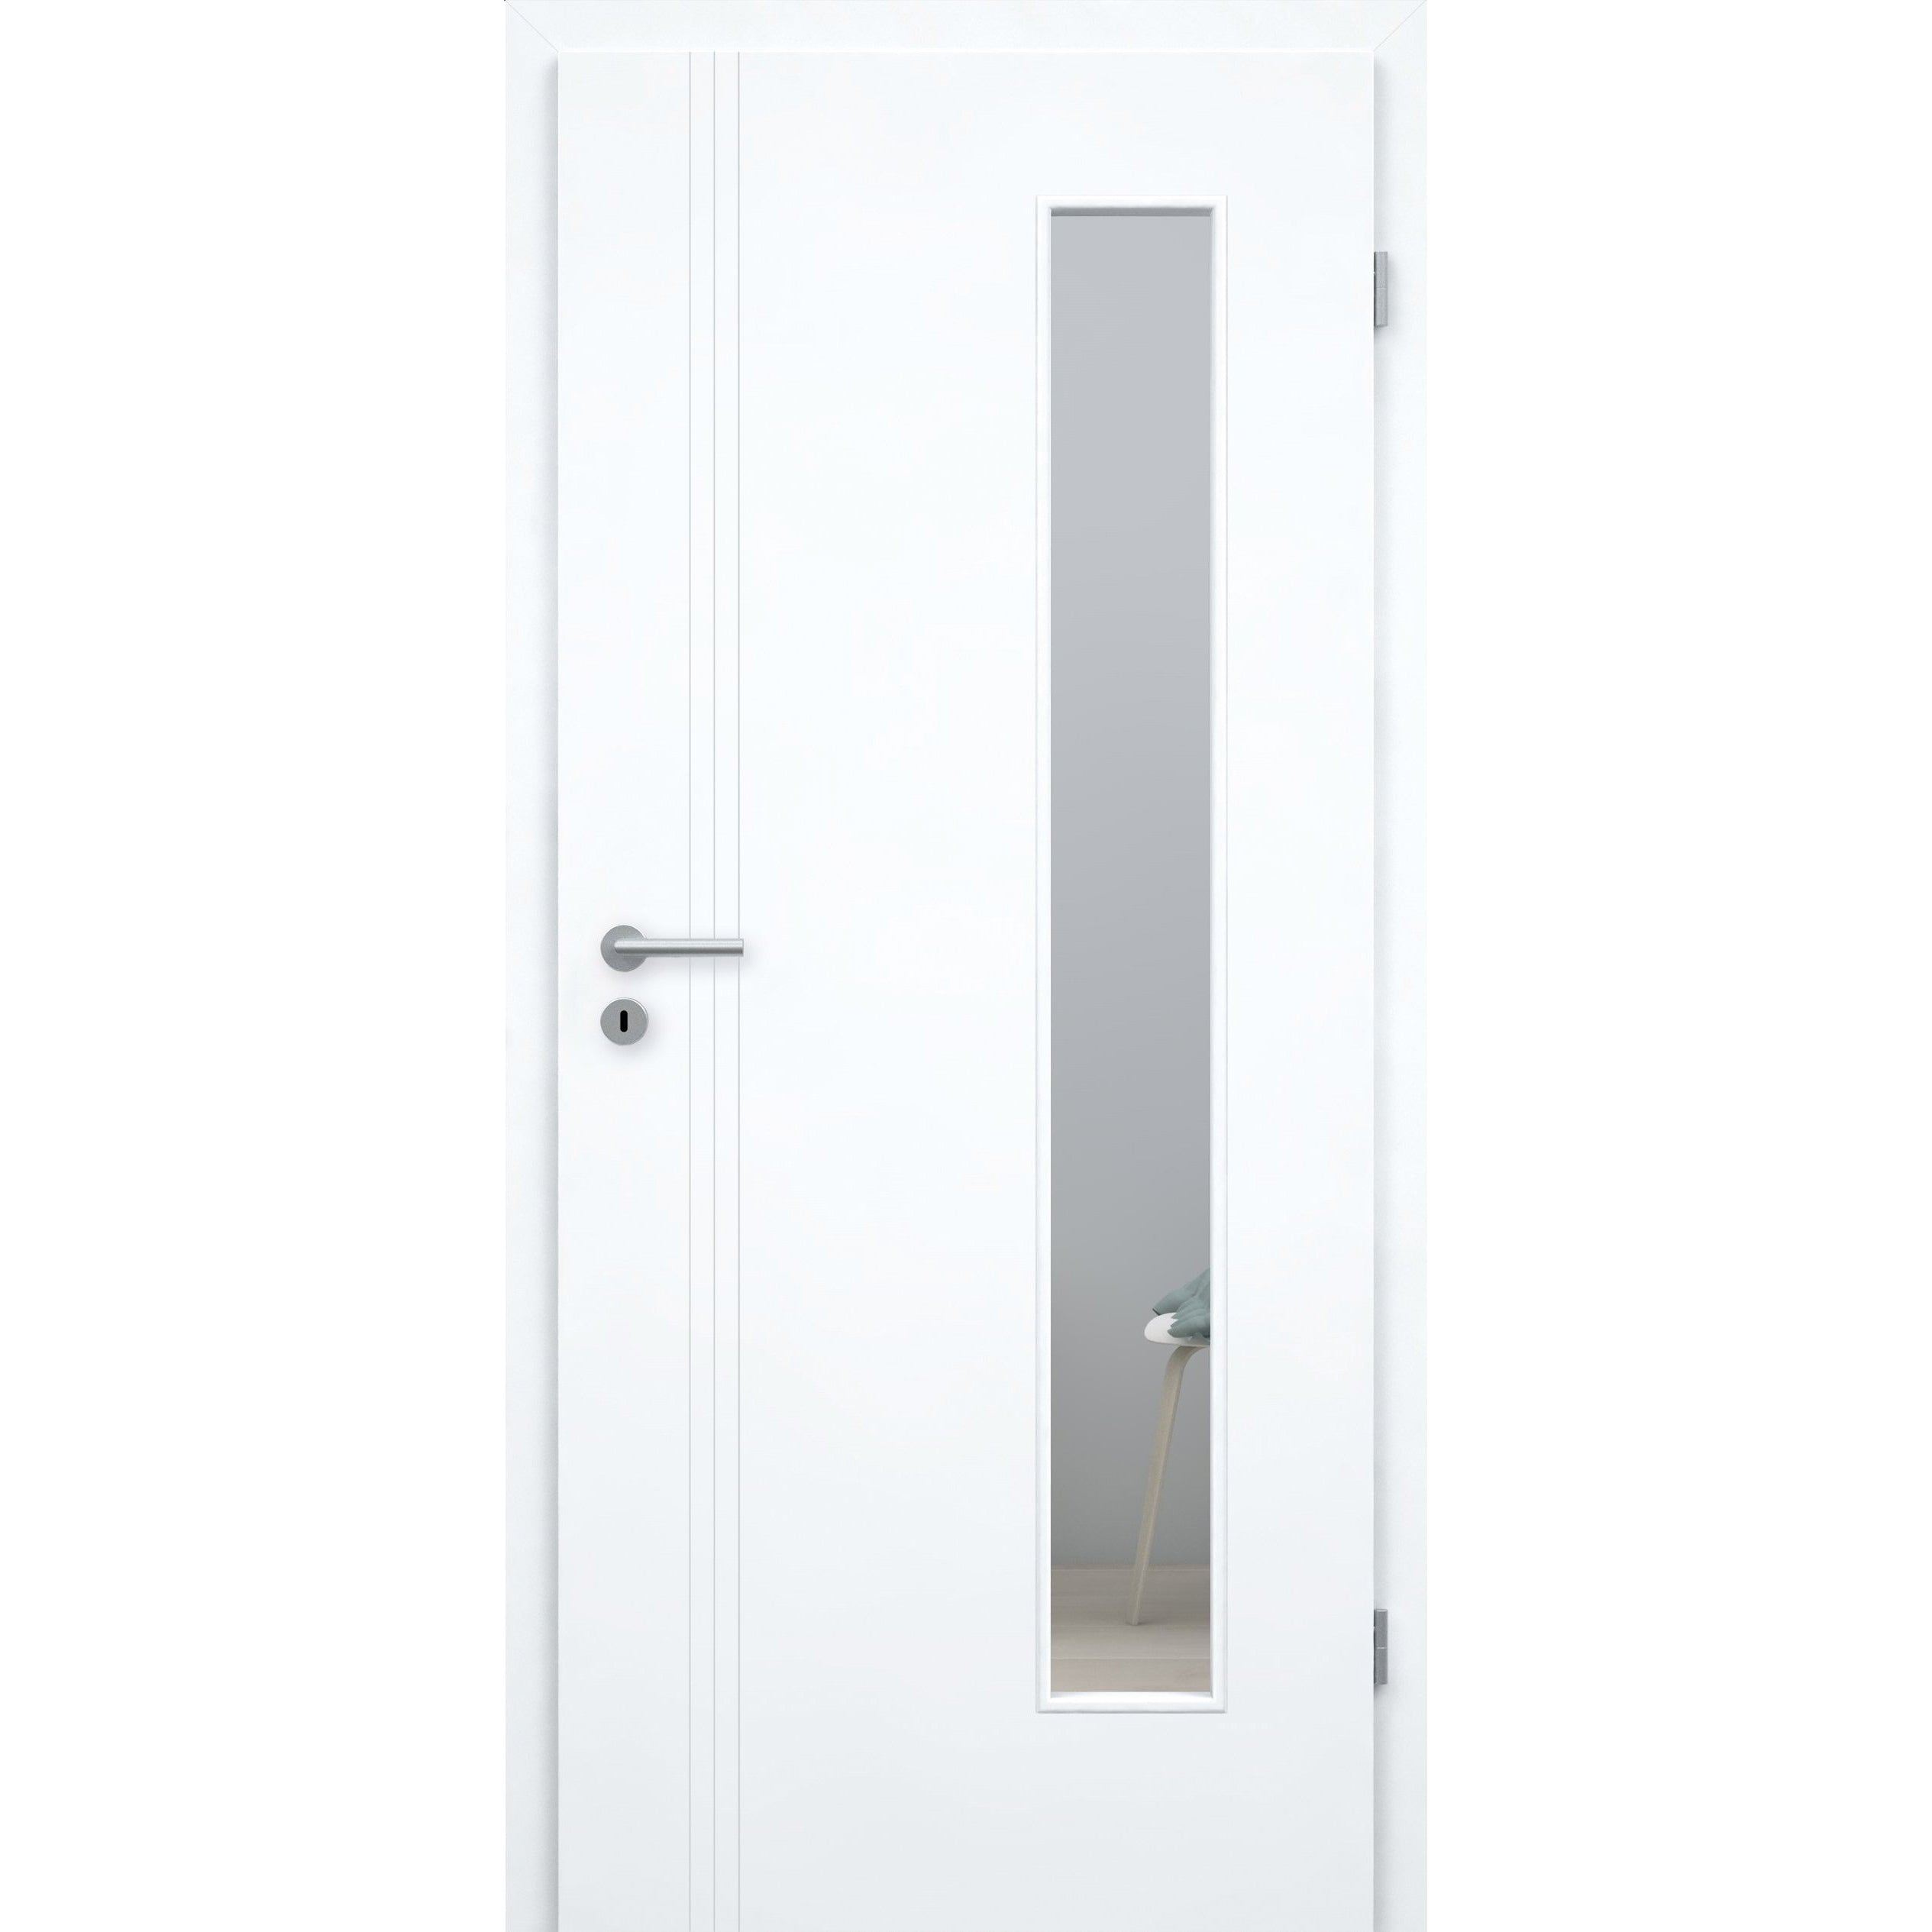 Zimmertür mit Zarge und Lichtausschnitt brillant-weiß 3 Rillen aufrecht Schlossseite Designkante - Modell Designtür VS33LAB